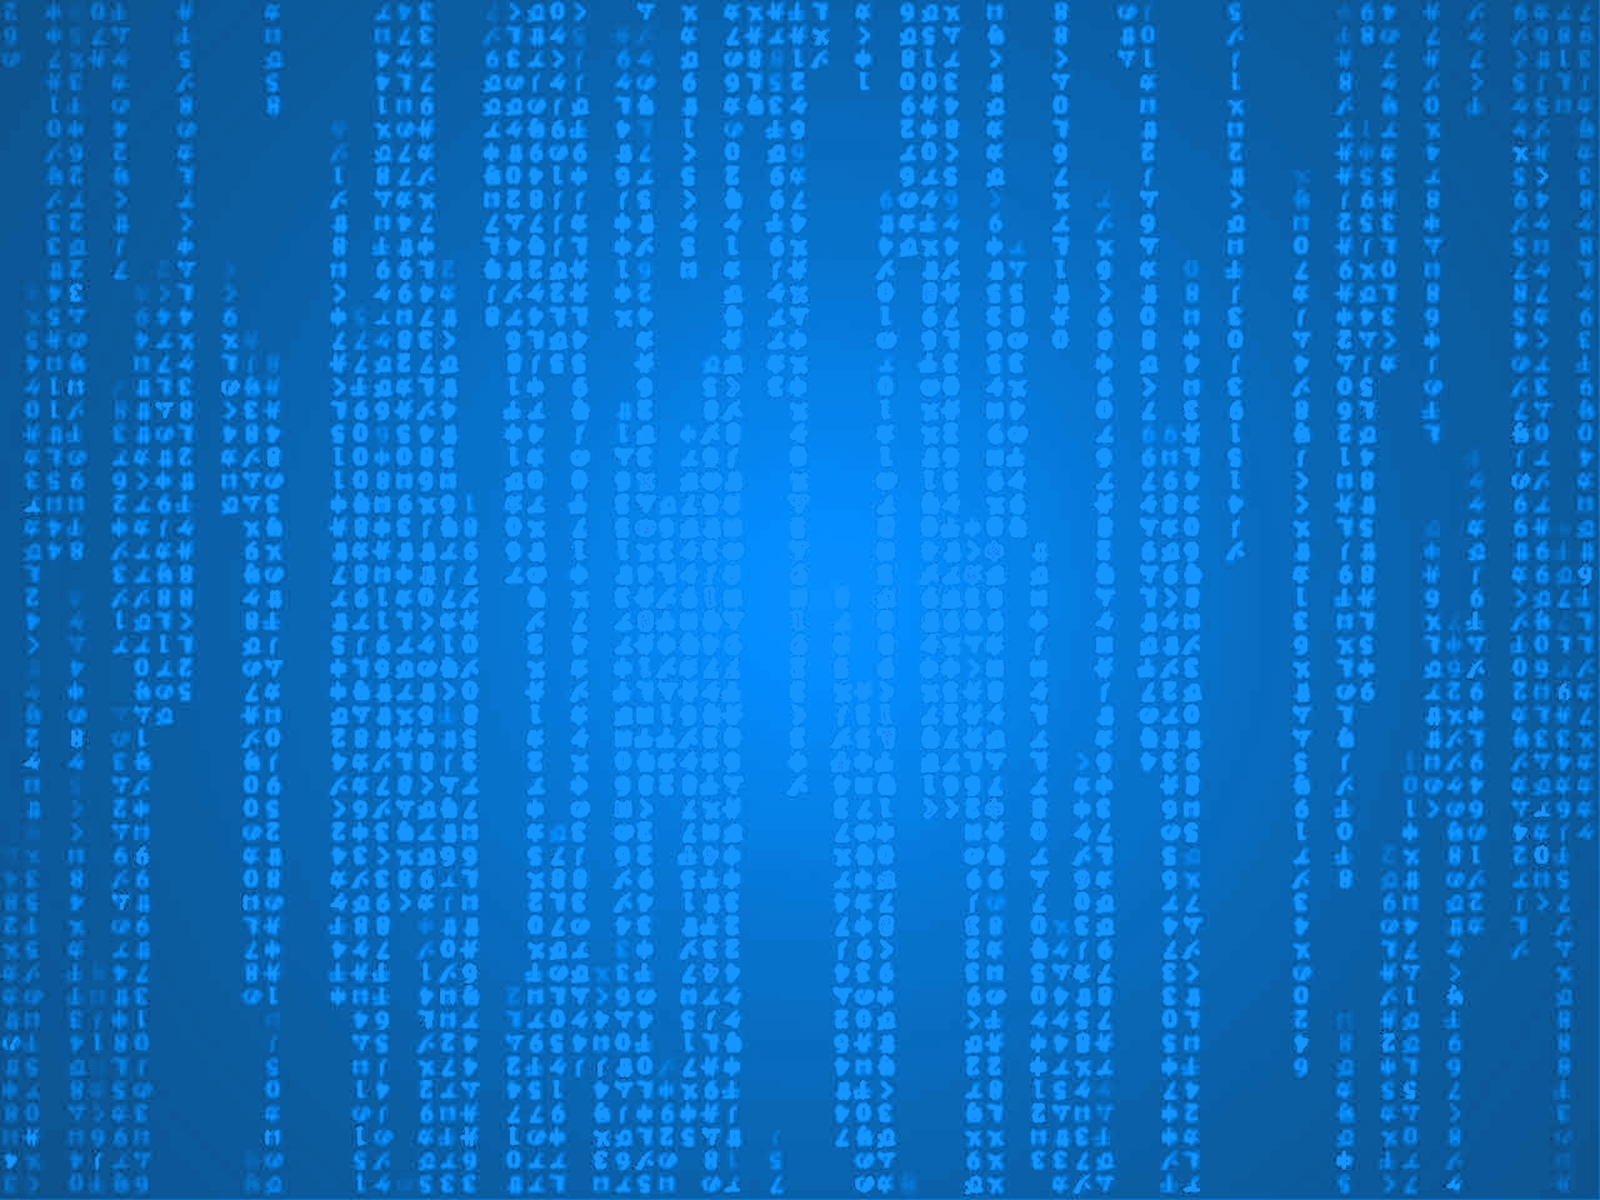 43+] Blue Matrix Code Wallpaper Live - WallpaperSafari